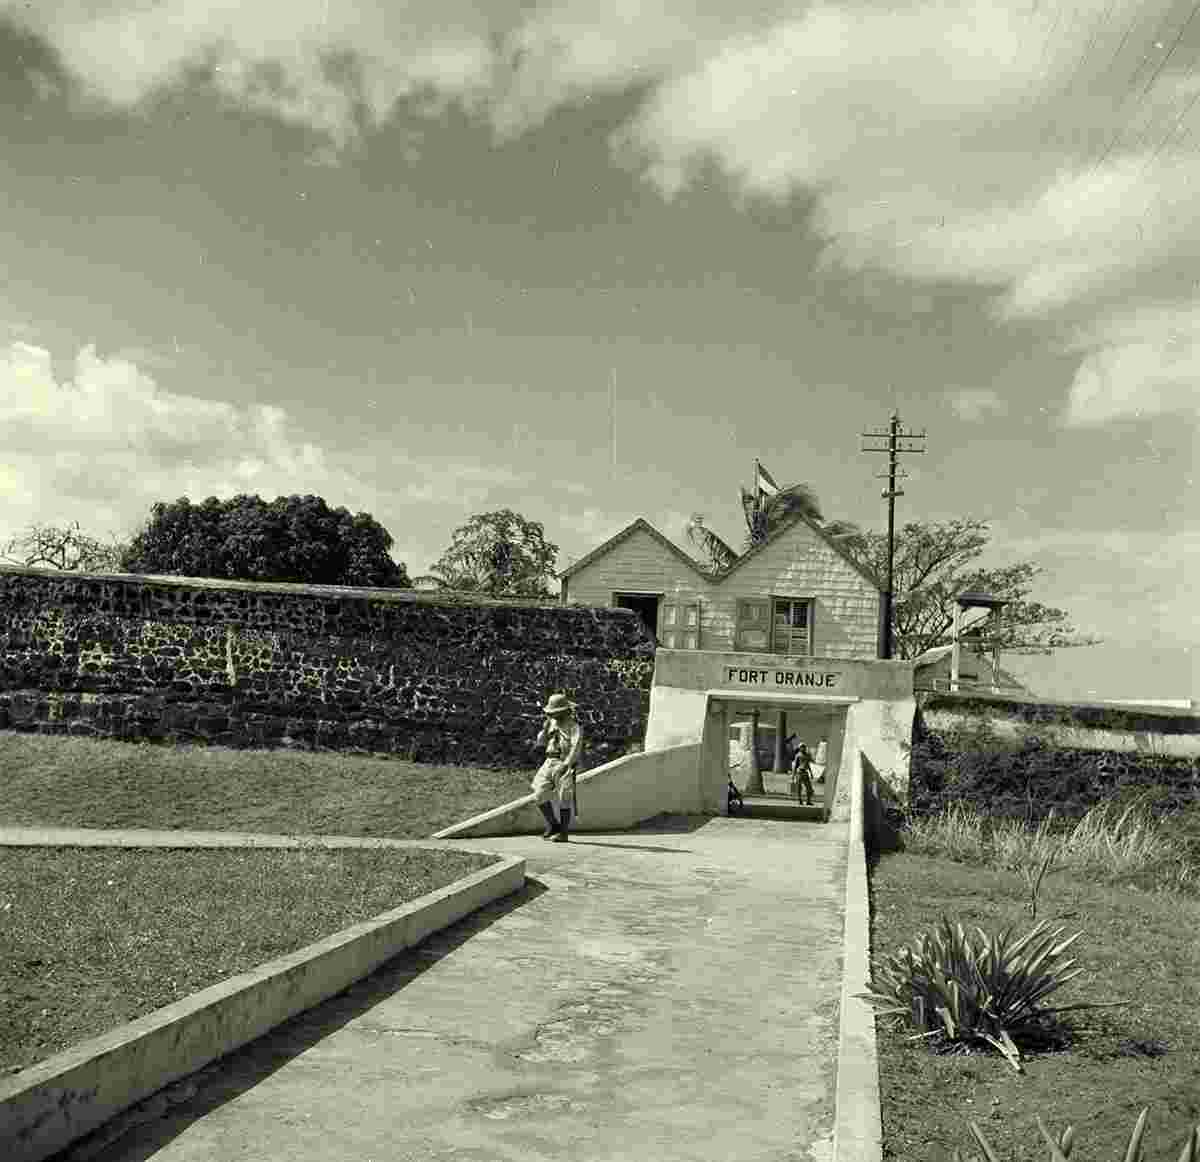 Oranjestad. Fort Orange, 1947